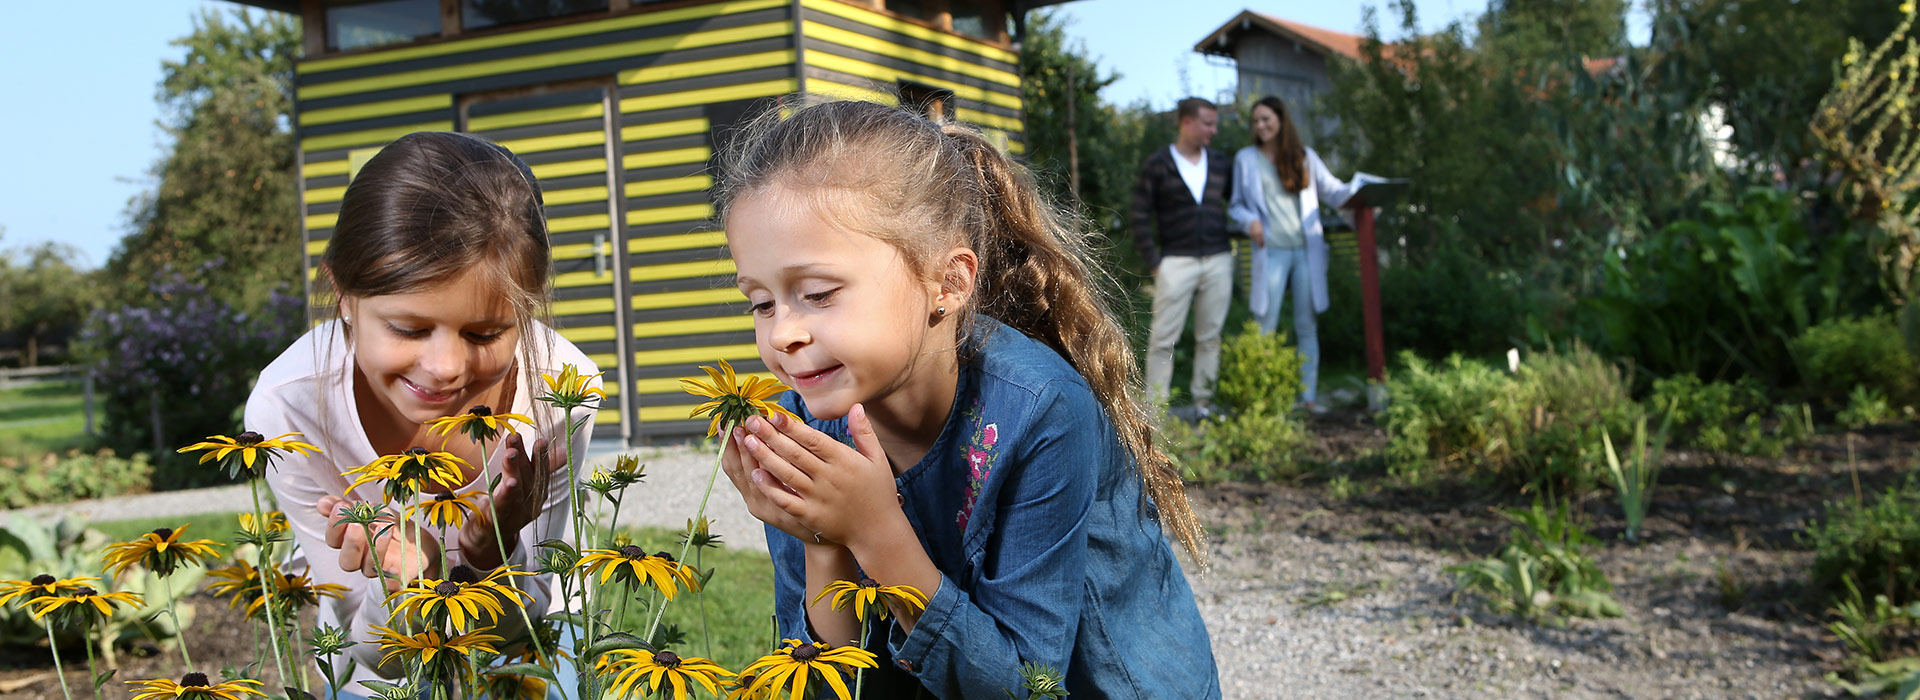 Kinder riechen an Blumen